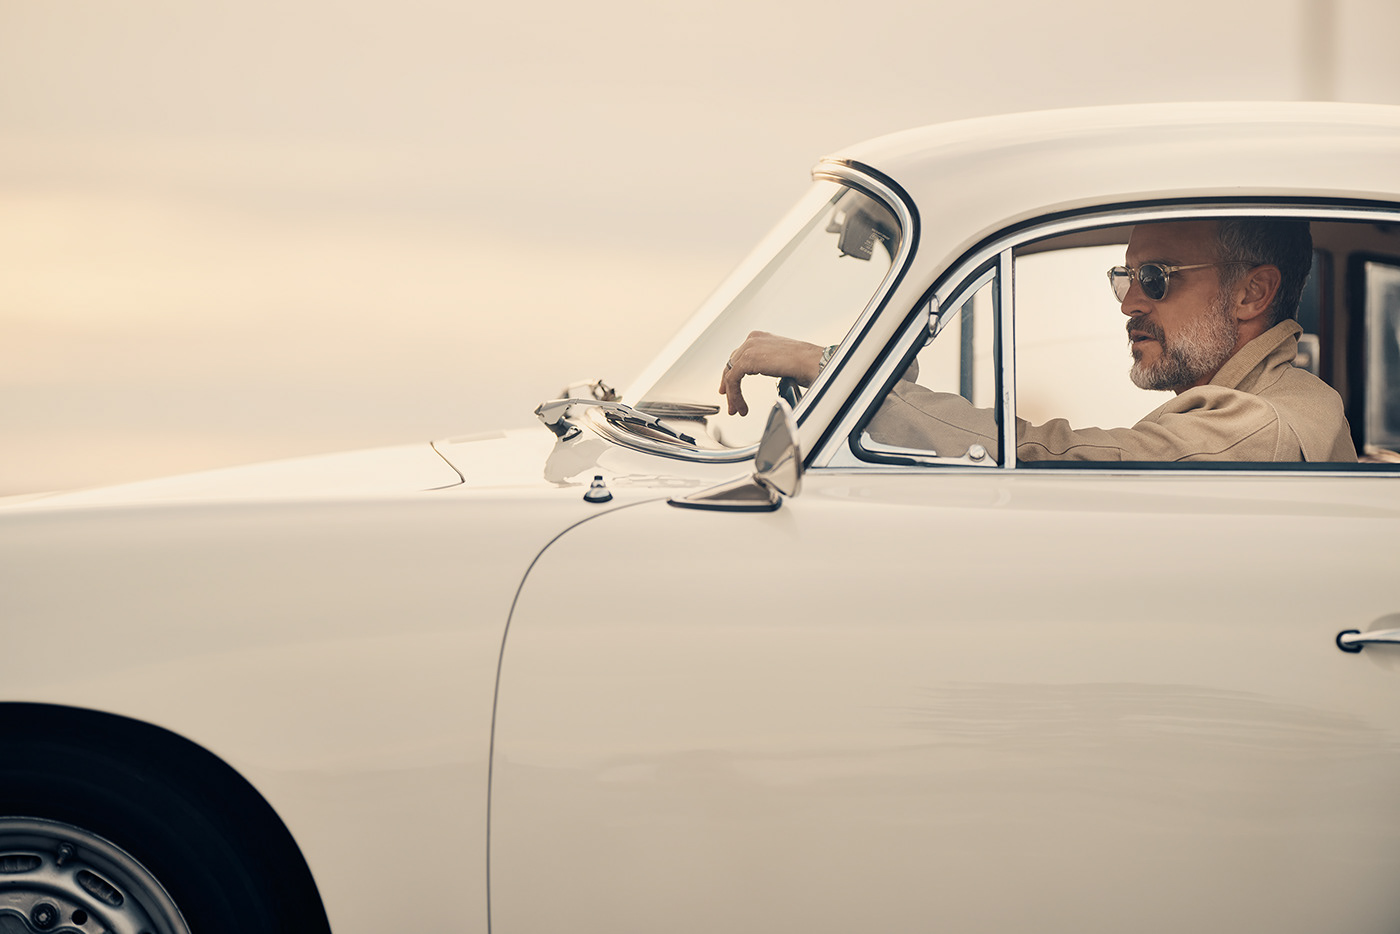 Porsche rolex Vintagecars vintage automotive   Automotive Photography sunset lifestyle